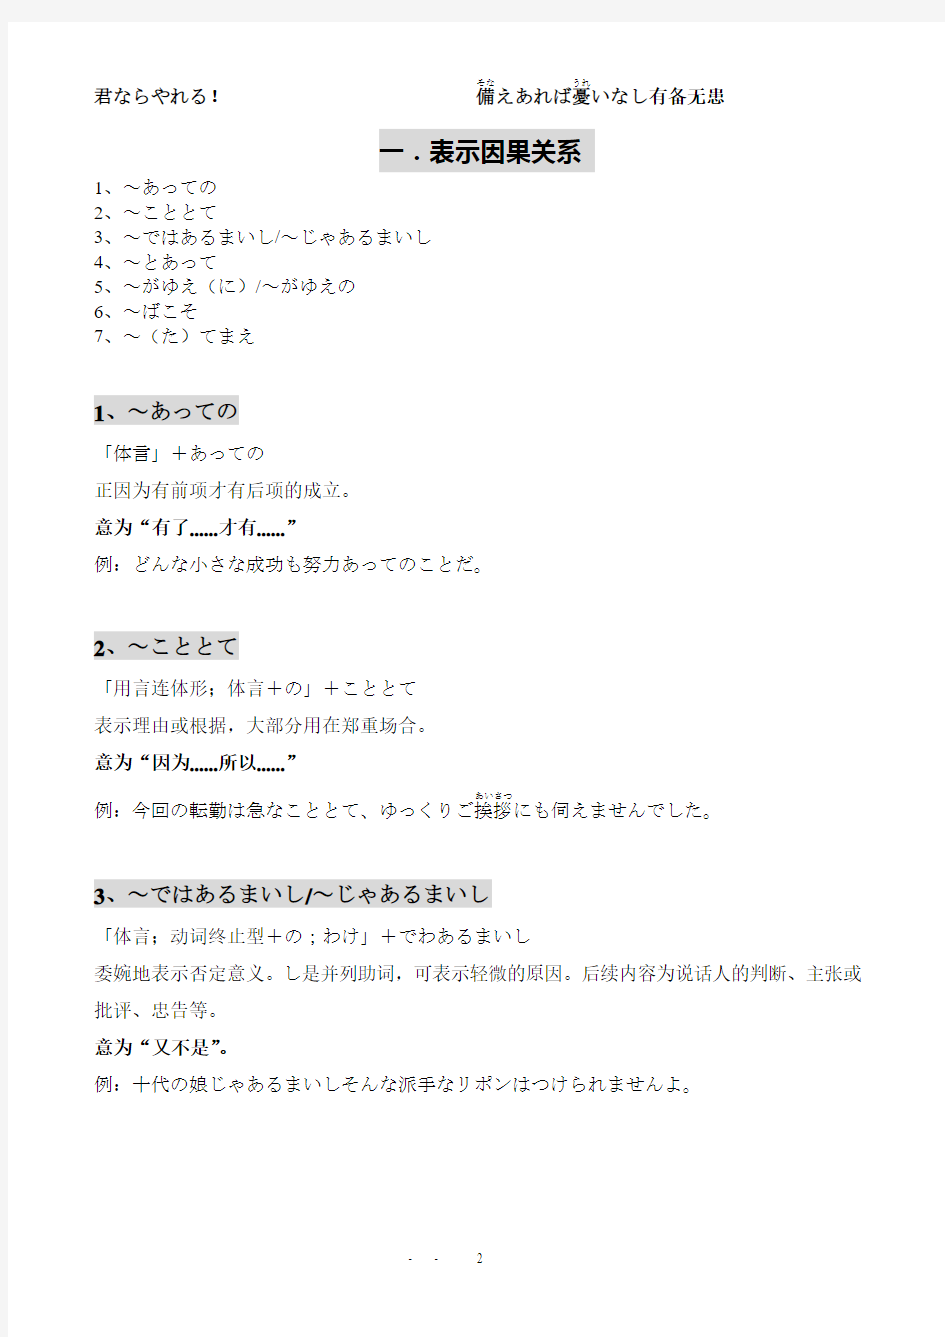 日本语能力考试 N1 【句型】部分汇总